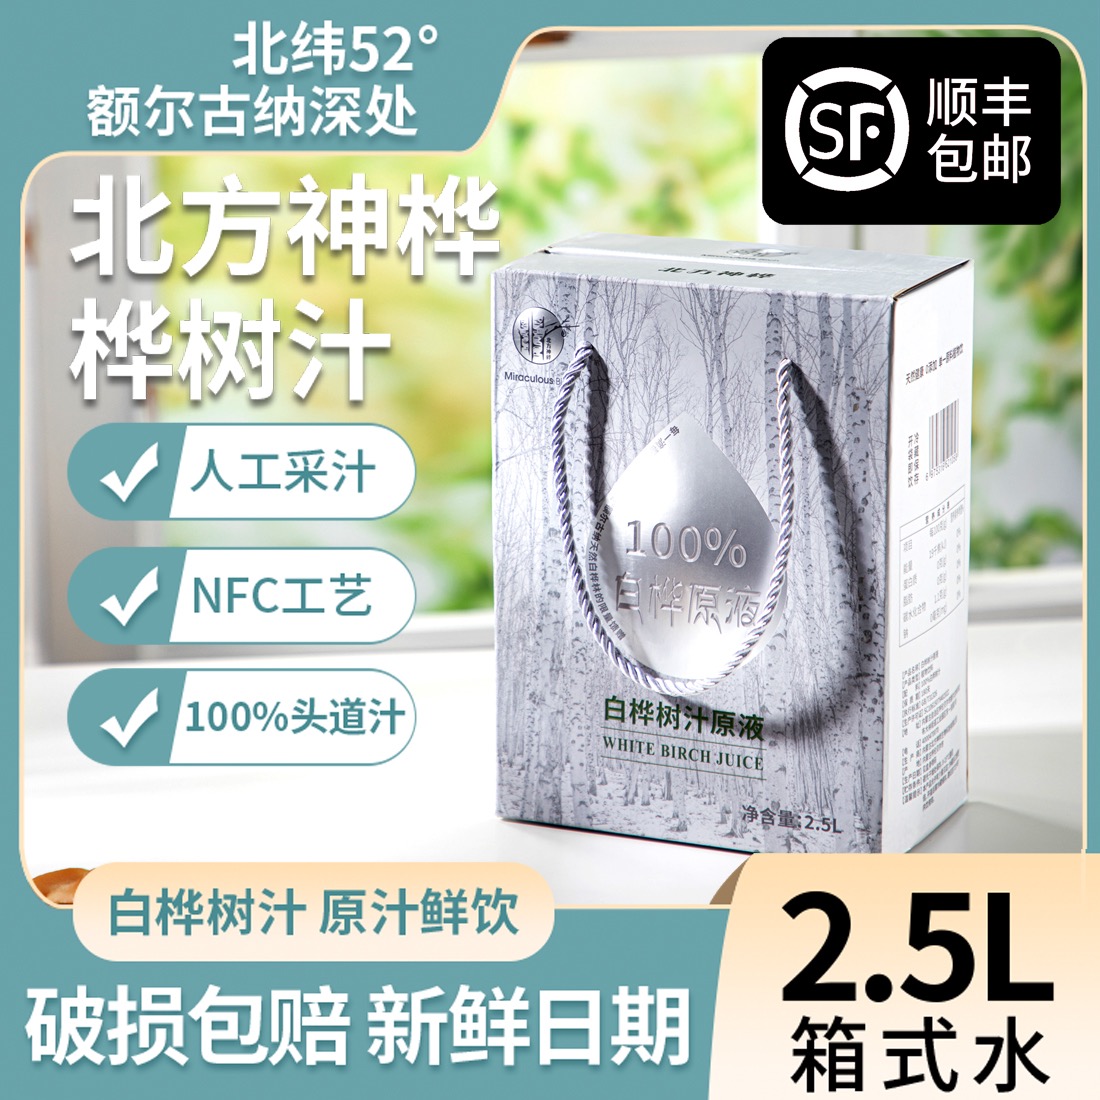 北方神桦白桦树汁100%NFC健康植物饮品0糖0脂无添加原液饮料2.5L